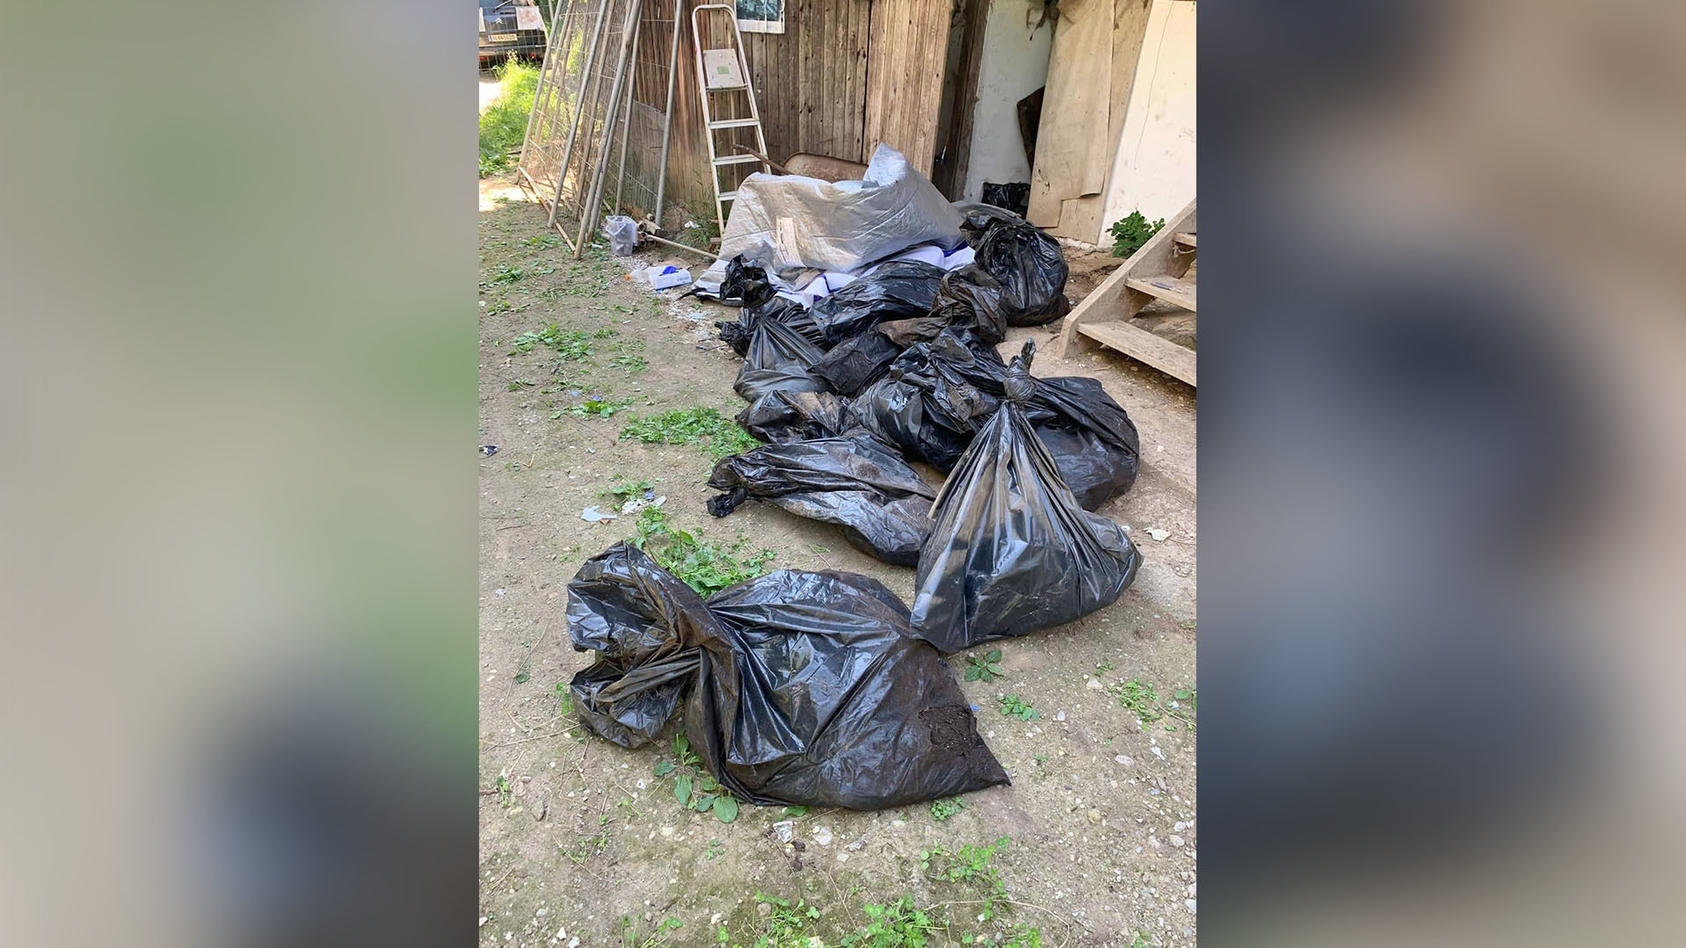 Kärnten 35 tote Hunde in Müllsäcken gefunden Tierschützer warnten